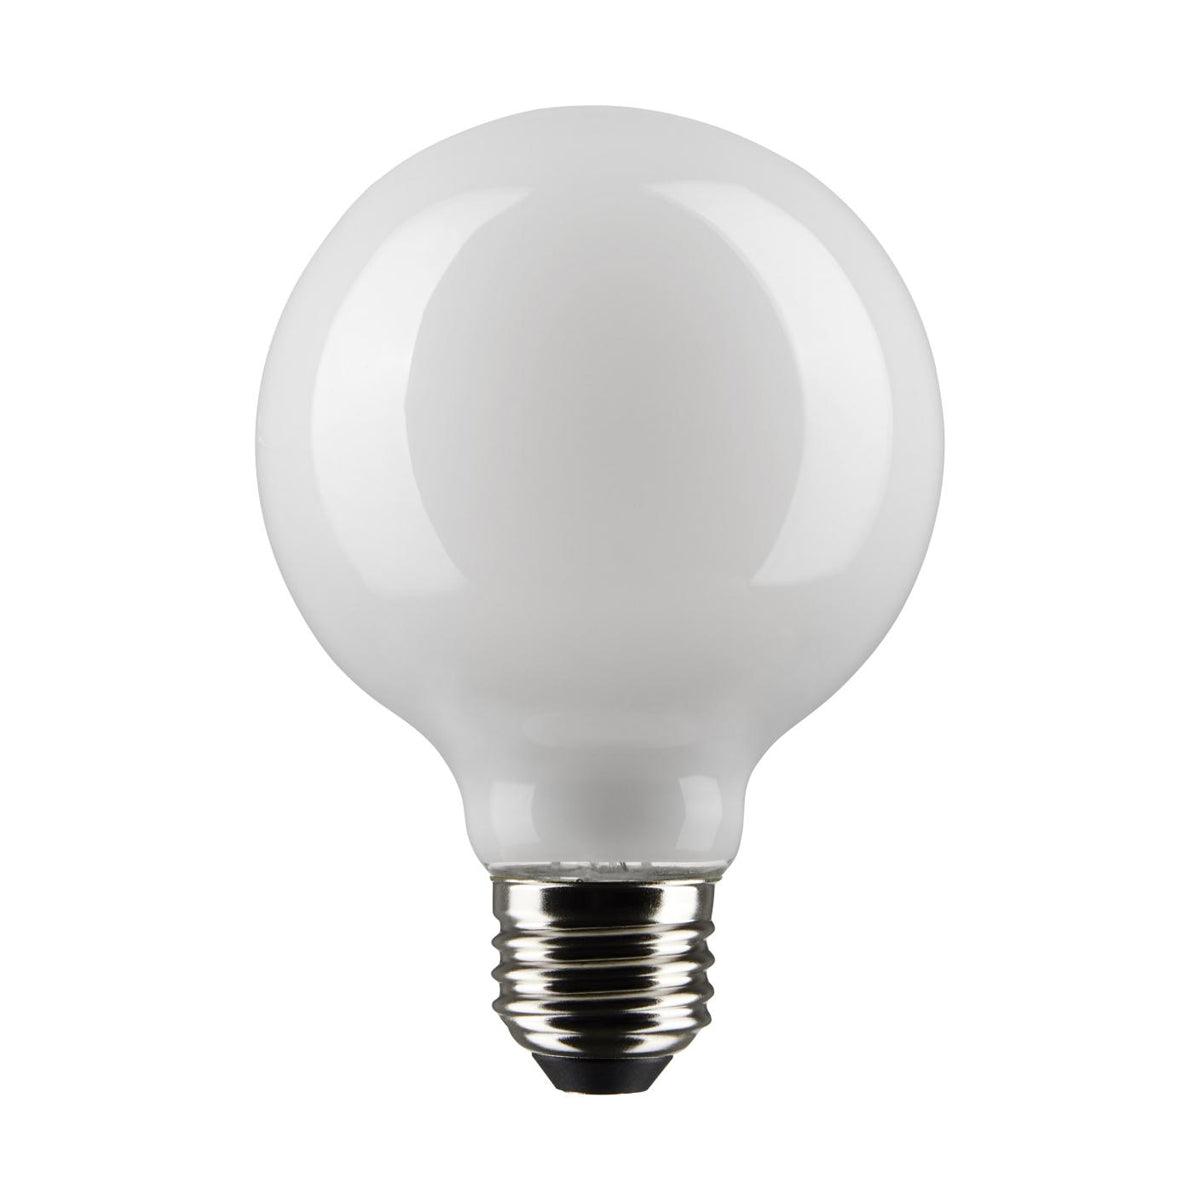 G25 LED Globe Bulb, 6 Watt, 500 Lumens, 4000K, E26 Medium Base, Frosted Finish - Bees Lighting